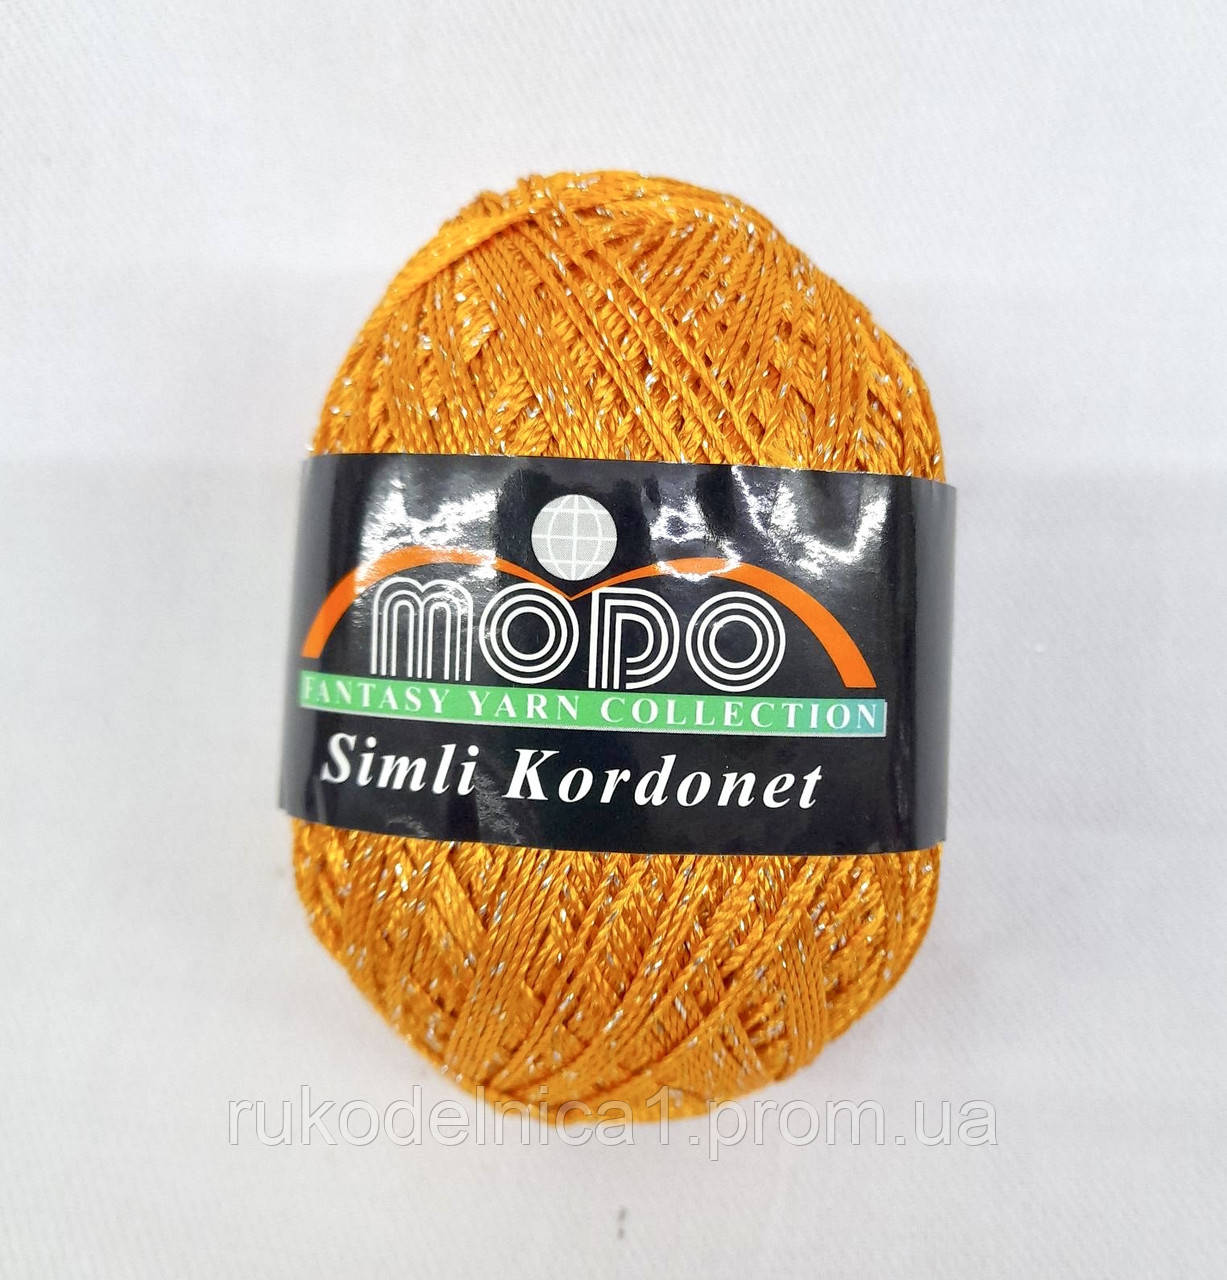 Пряжа з люрексом Modo Simli Kordenet (1115 Помаранчевий) для вечірніх вбрань, купальників, сумочок, виробів,